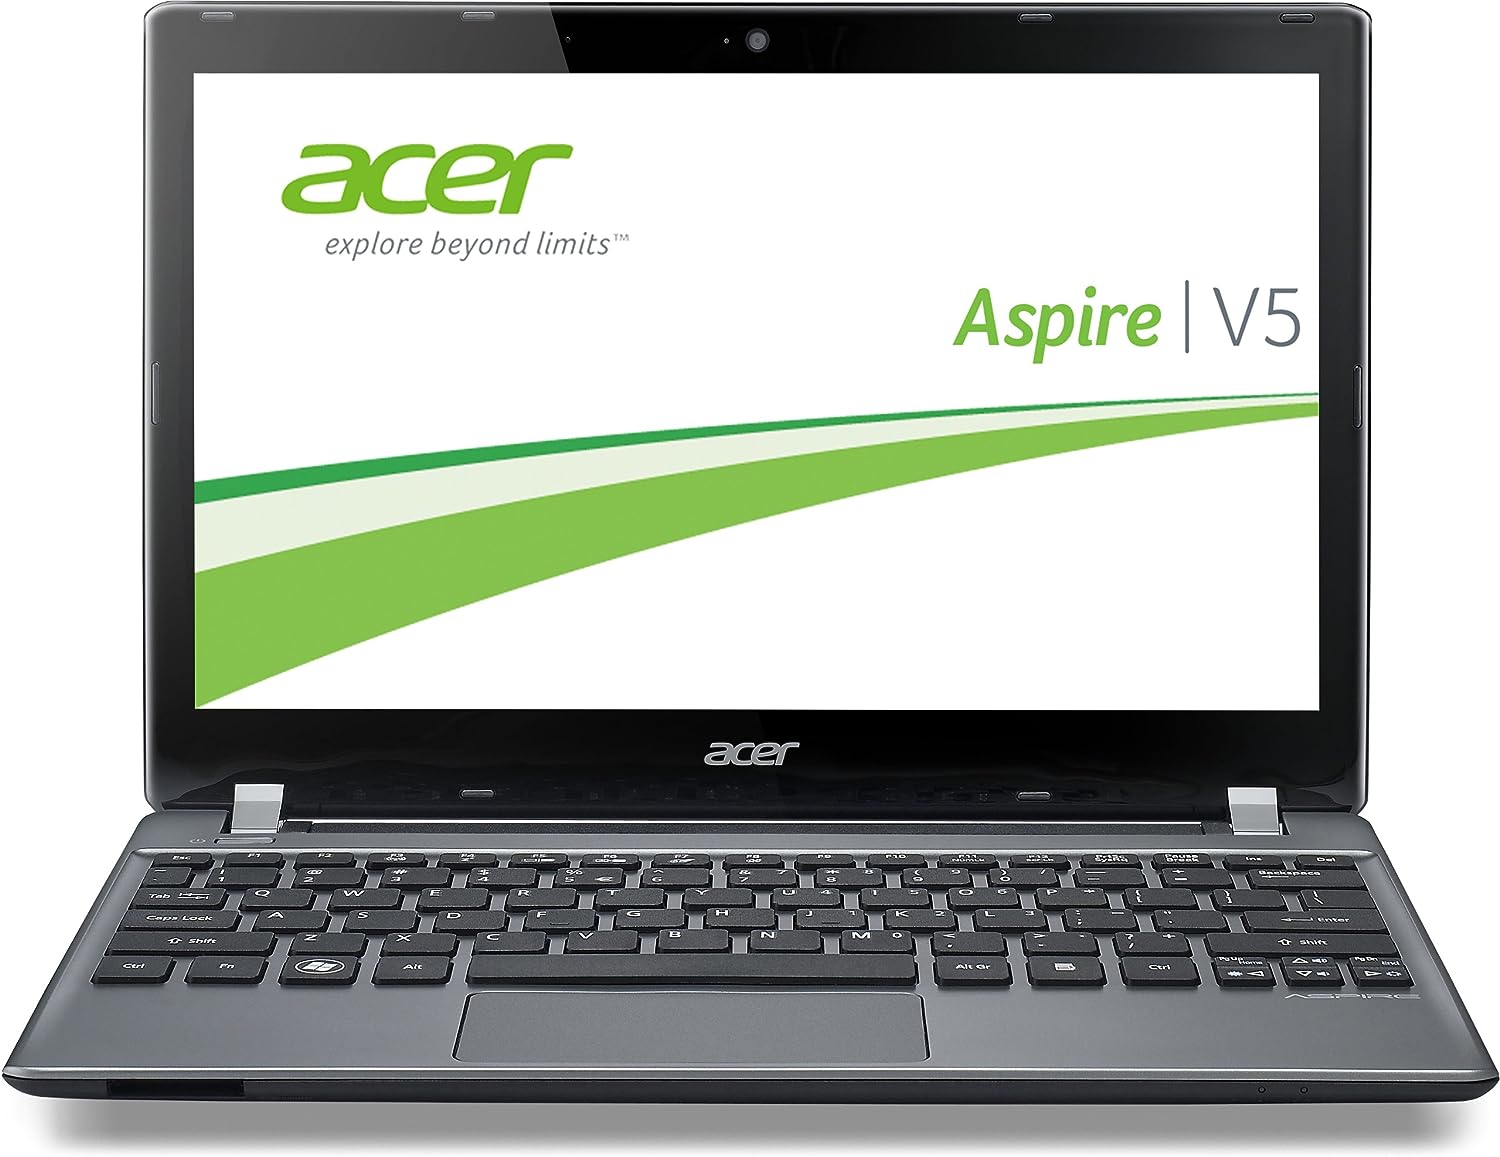 Acer Aspire V5-571 Notebook